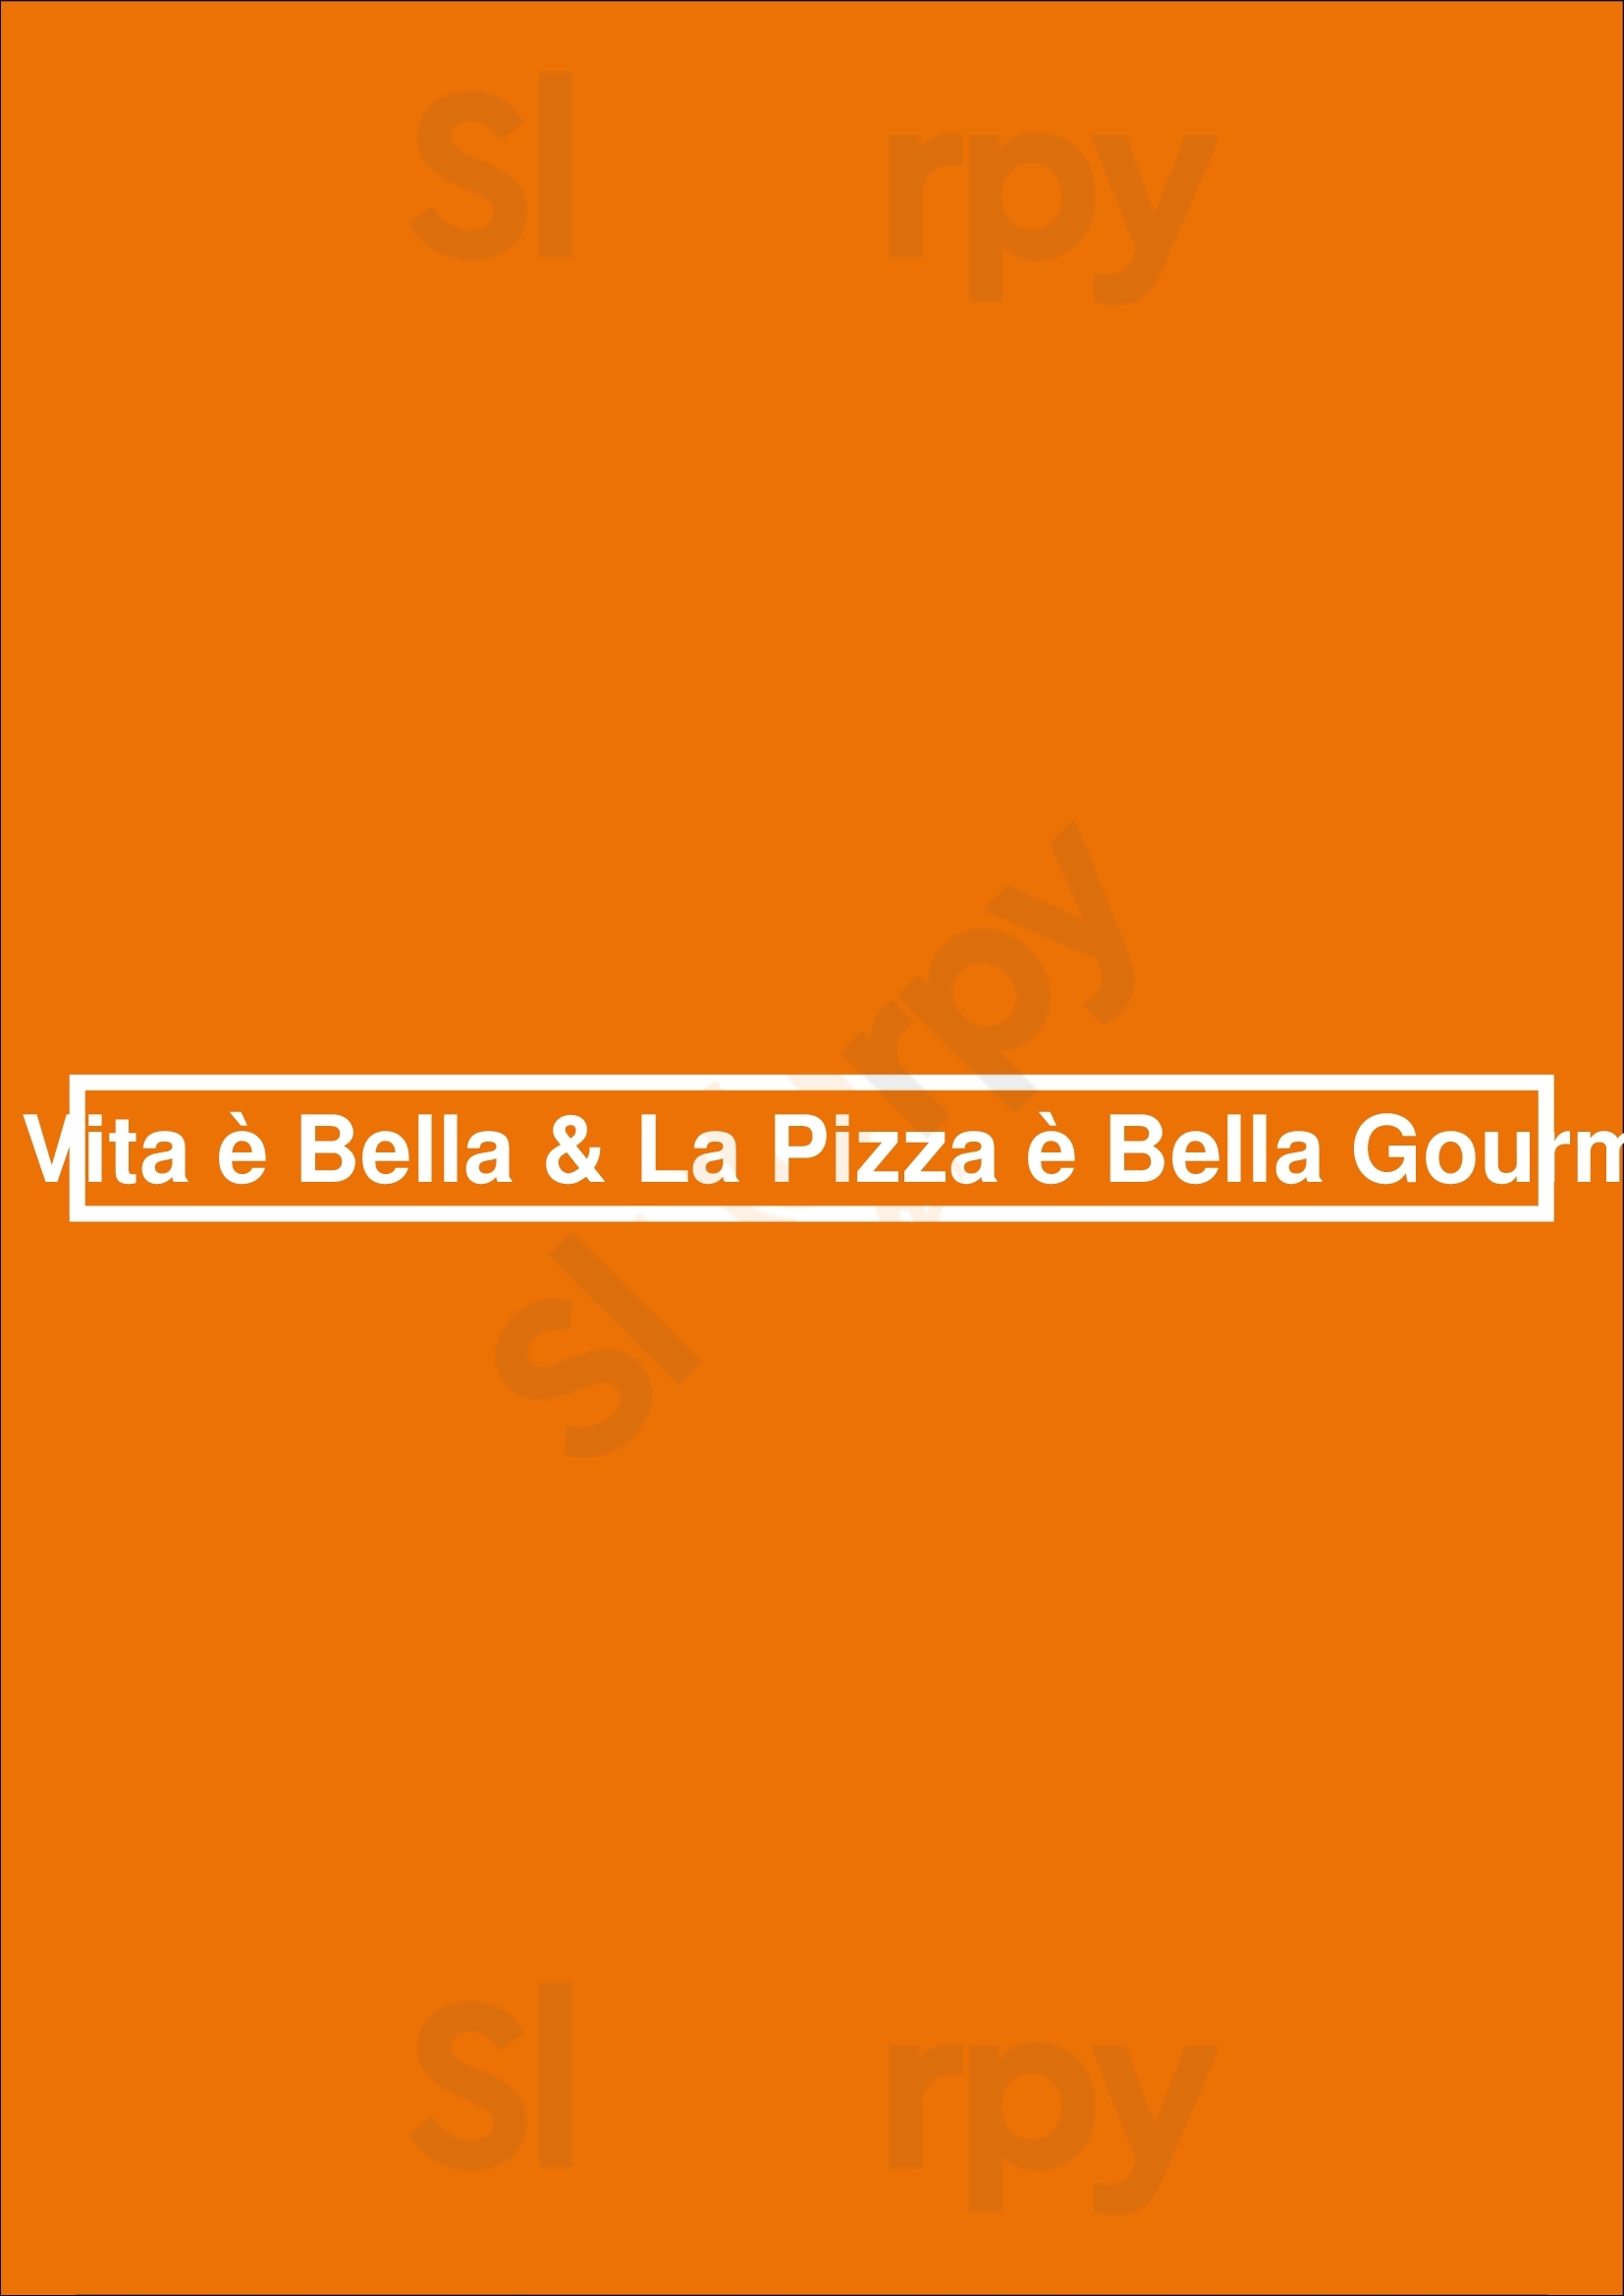 La Pizza è Bella Gourmet Etterbeek Menu - 1